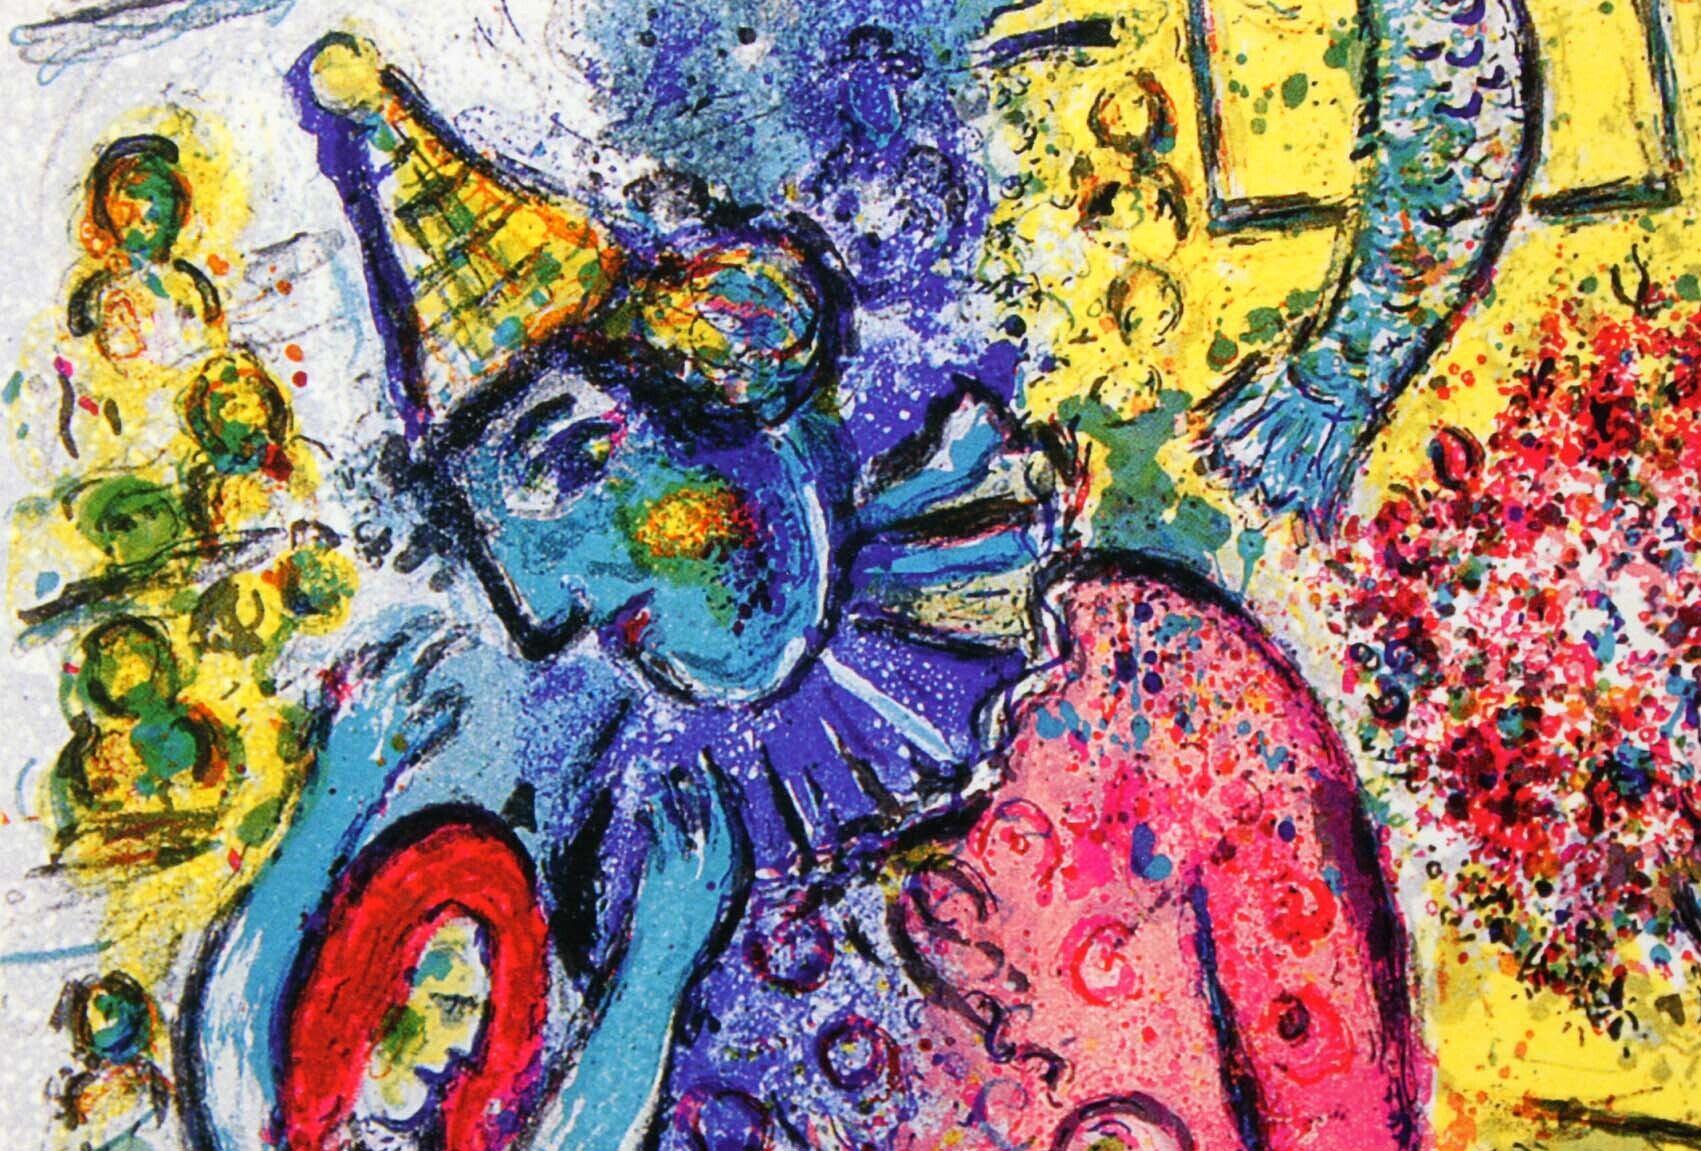 マルク・シャガール絵画「サーカス2」作品証明書・展示用フック・限定375部エディション付複製画ジークレ